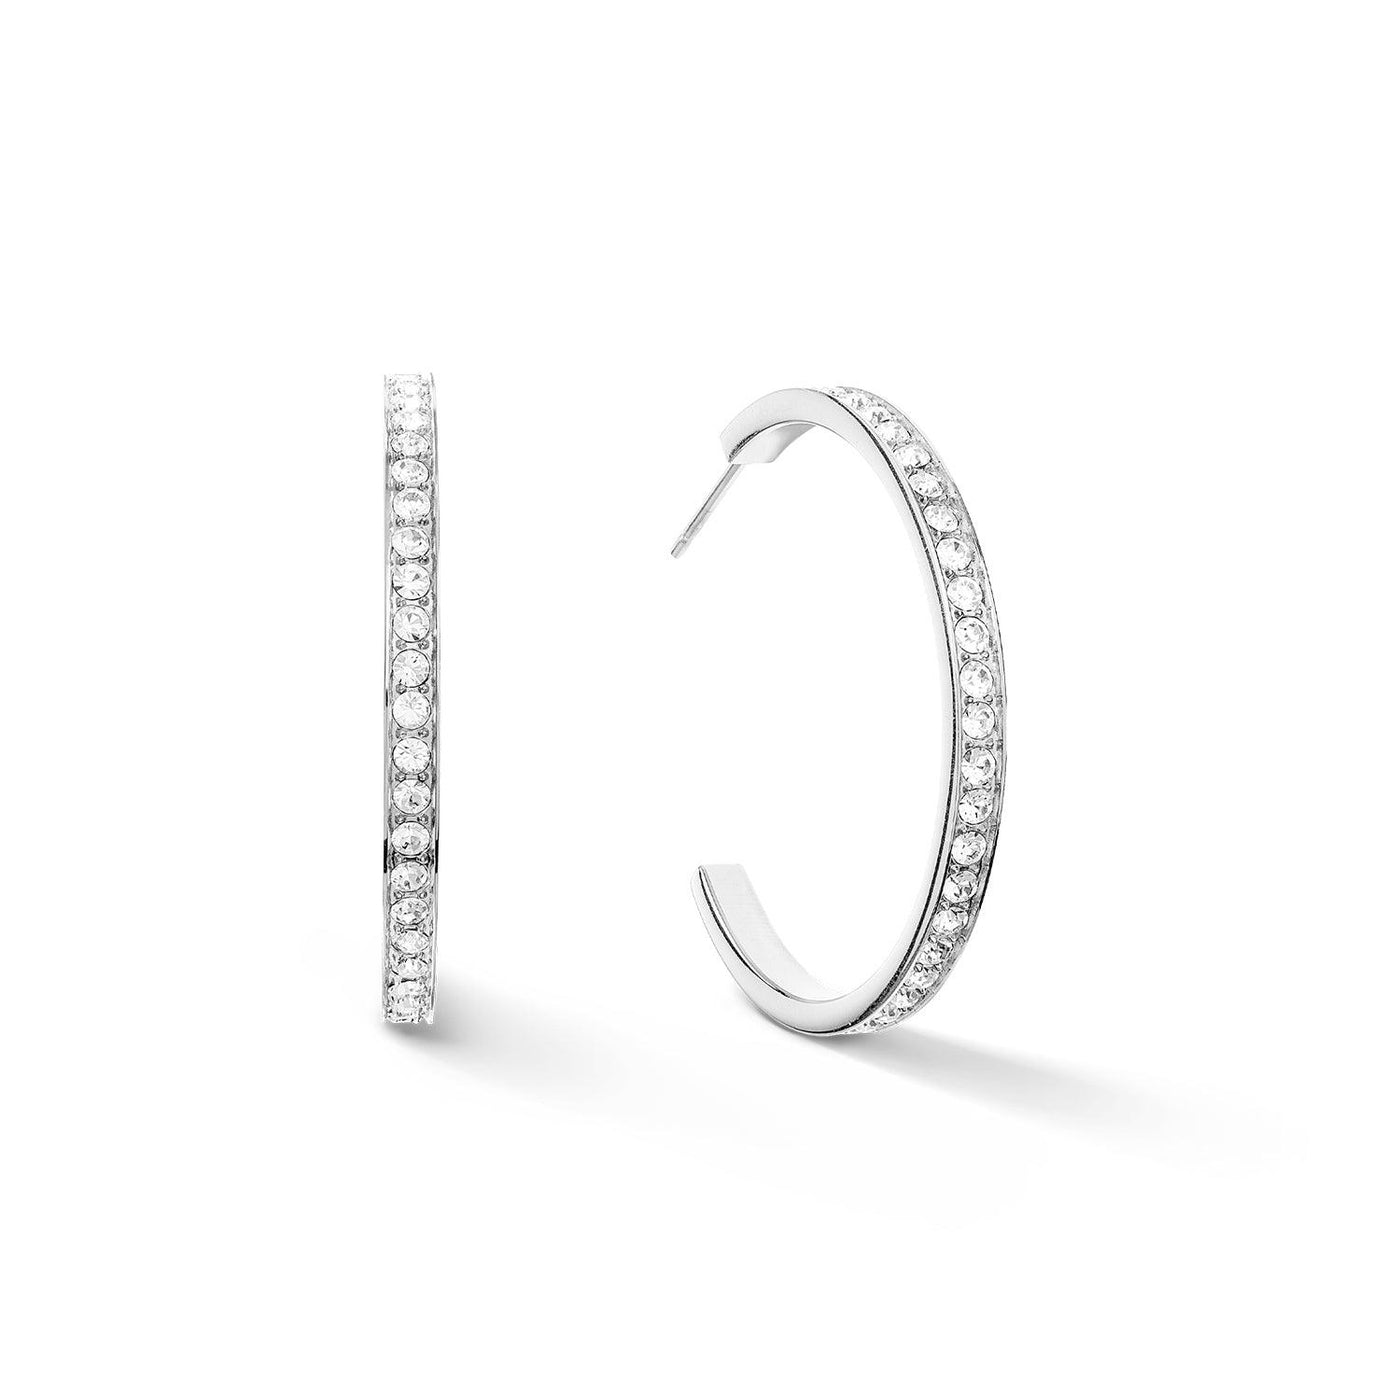 Coeur De Lion 35mm Crystal Hoop Earrings - Silver & White - Rococo Jewellery